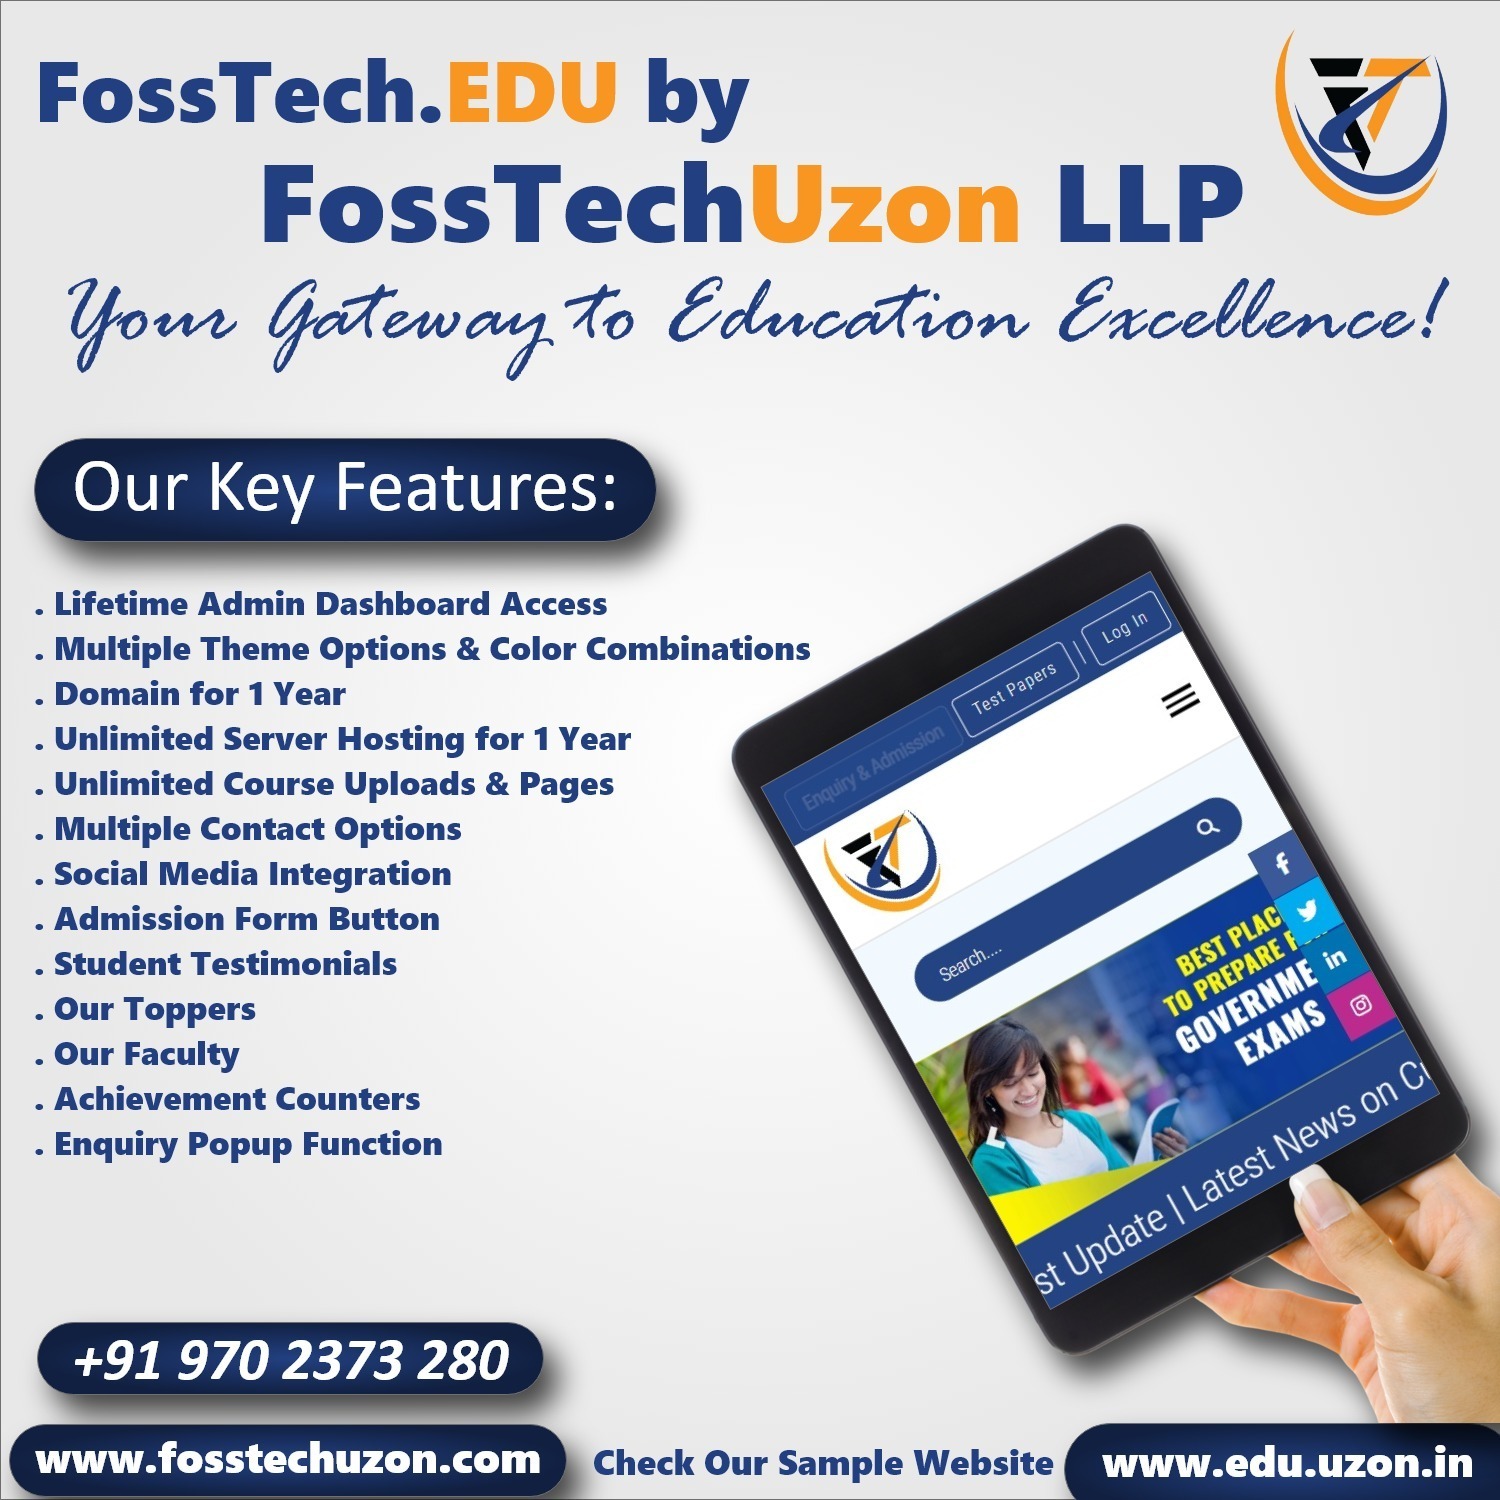 FossTech.EDU With FossTechUzon LLP